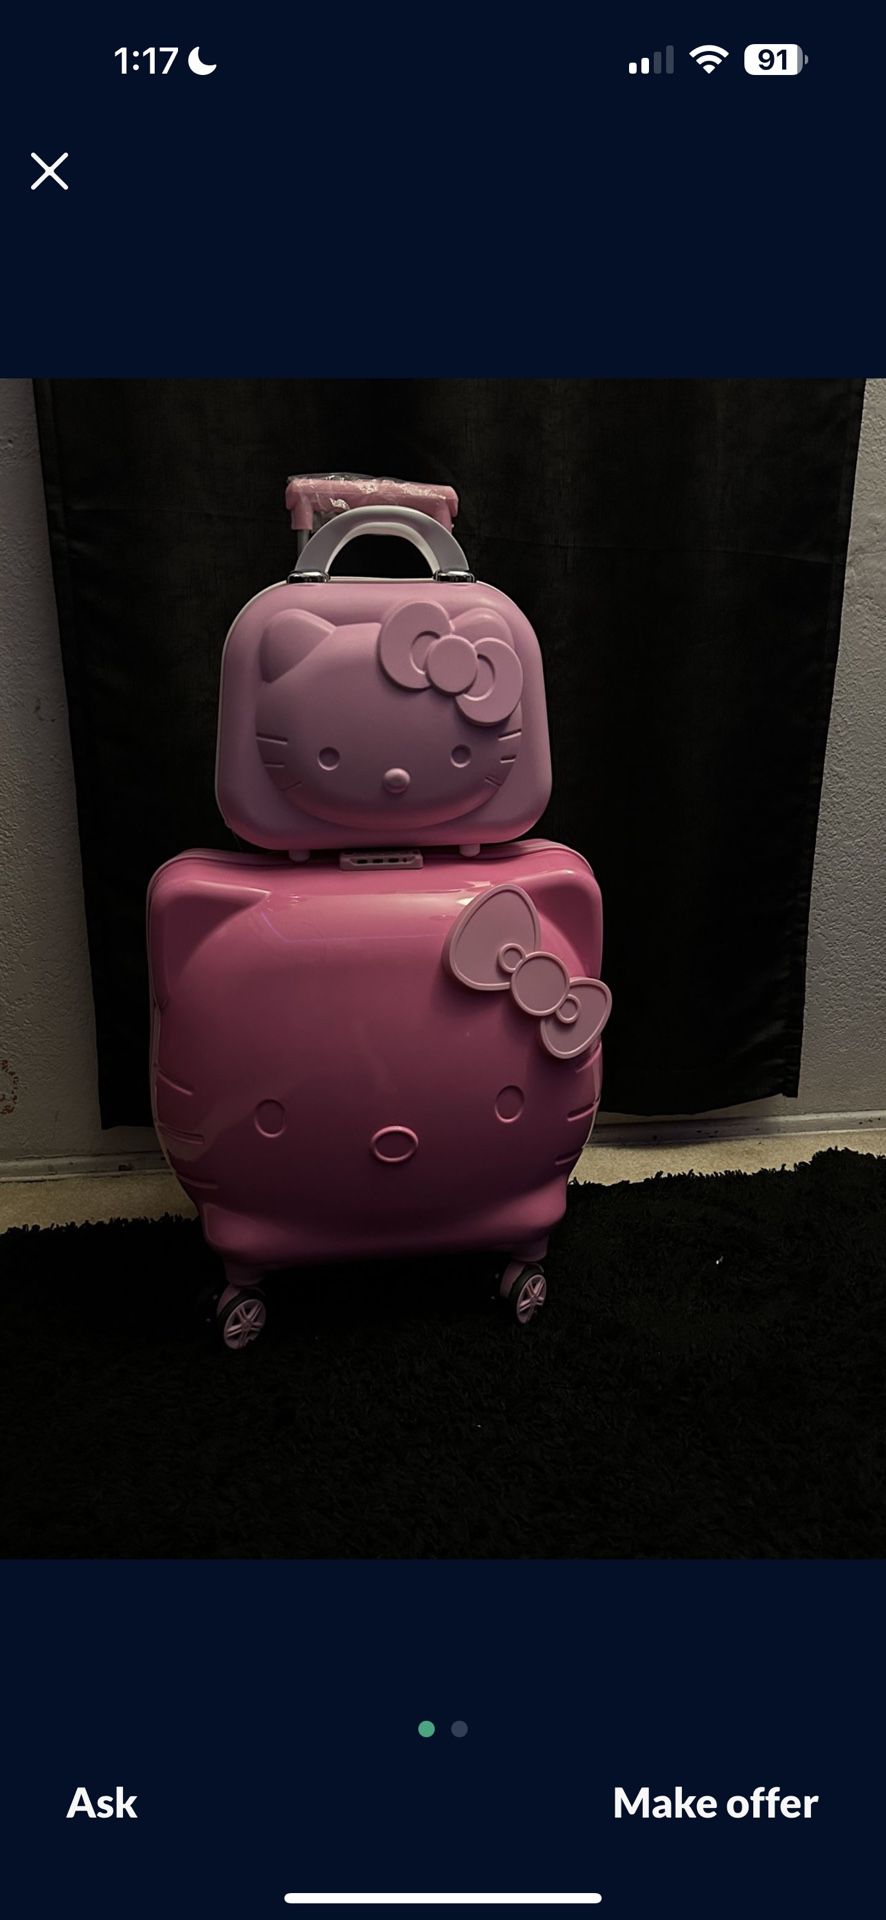 Hello Kitty Luggage